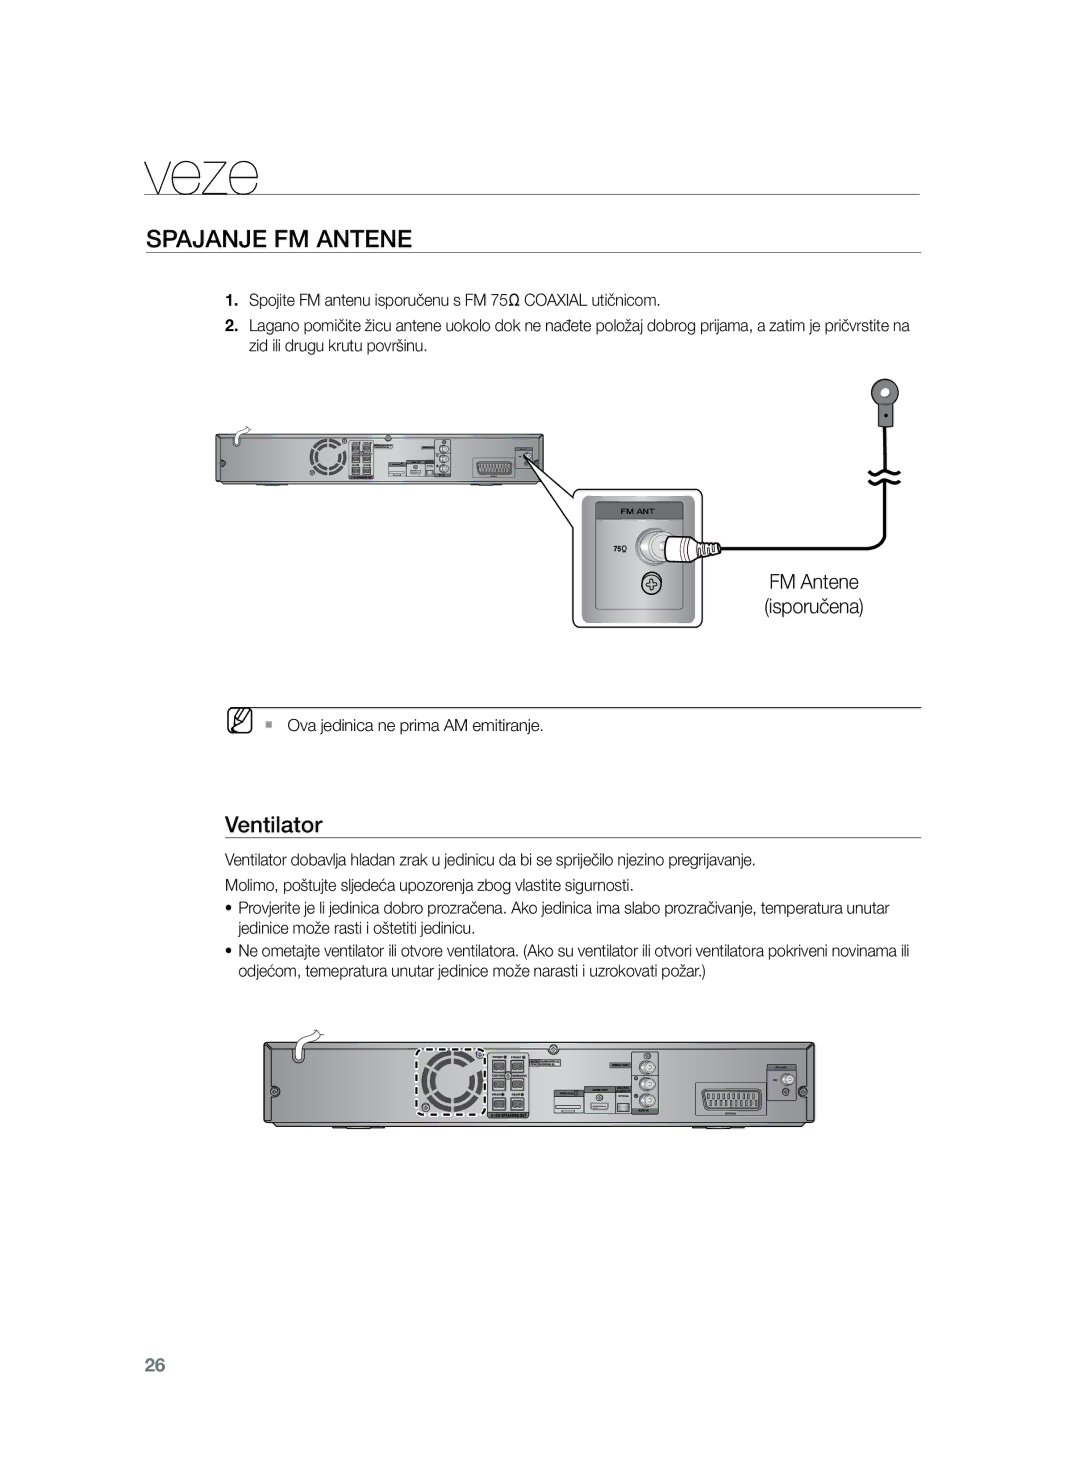 Samsung HT-Z220R/EDC manual Spajanje FM antene, Ventilator, FM Antene isporučena, MM`` Ova jedinica ne prima AM emitiranje 